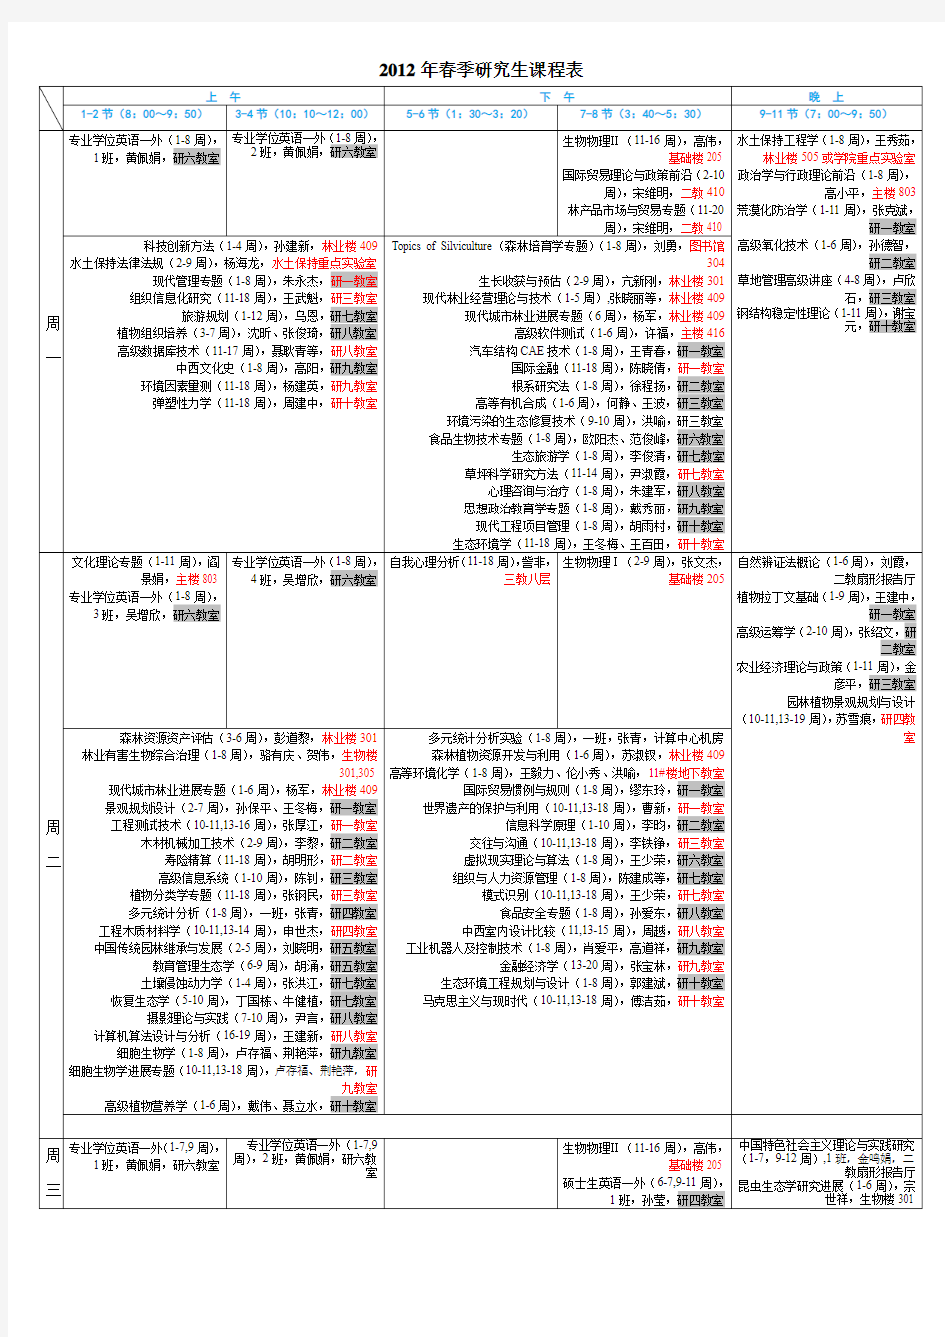 北京林业大学 2012年春季研究生课程表